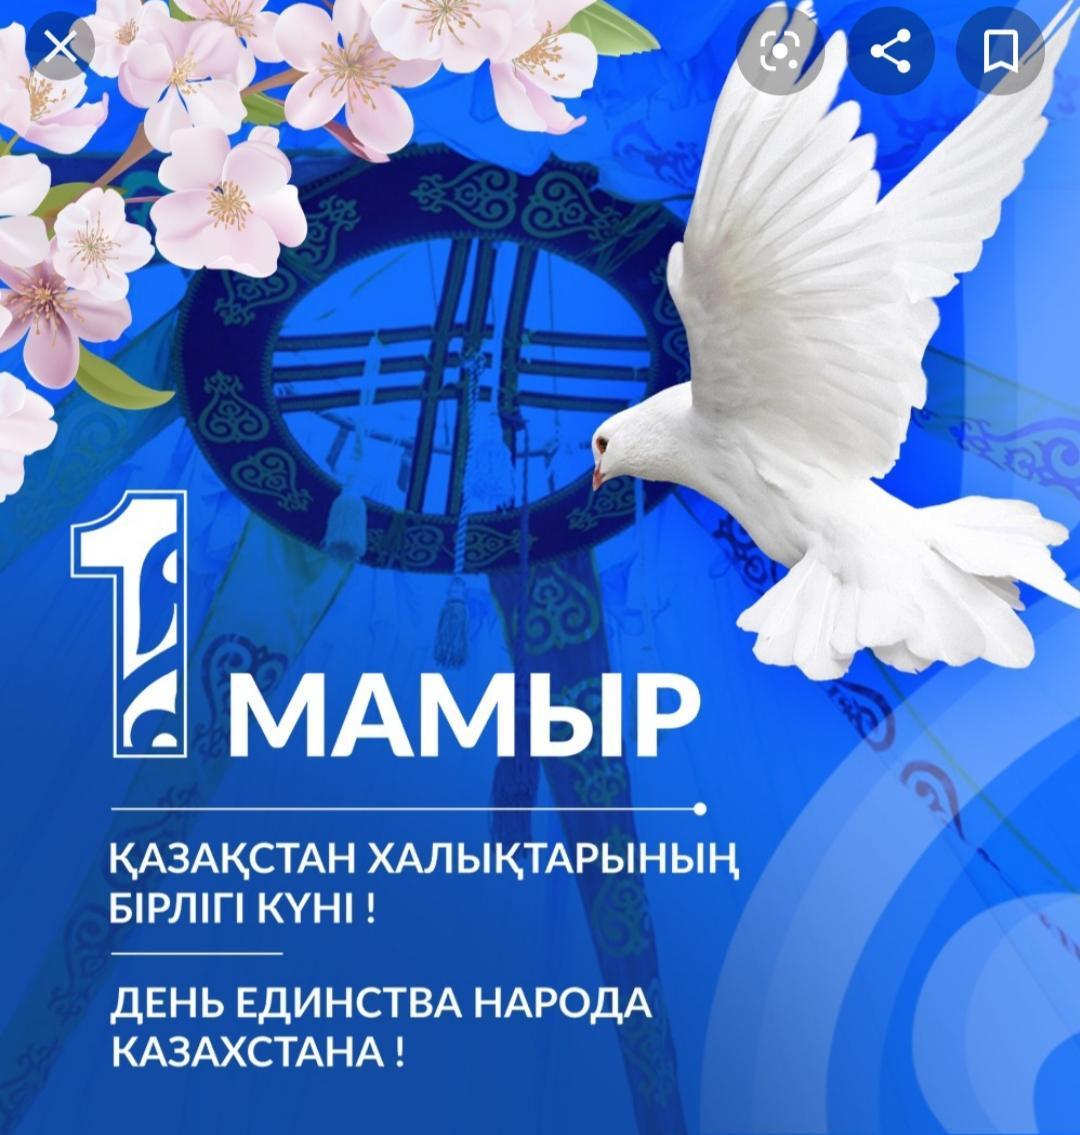 Поздравляем с Днем единства народов Казахстана!